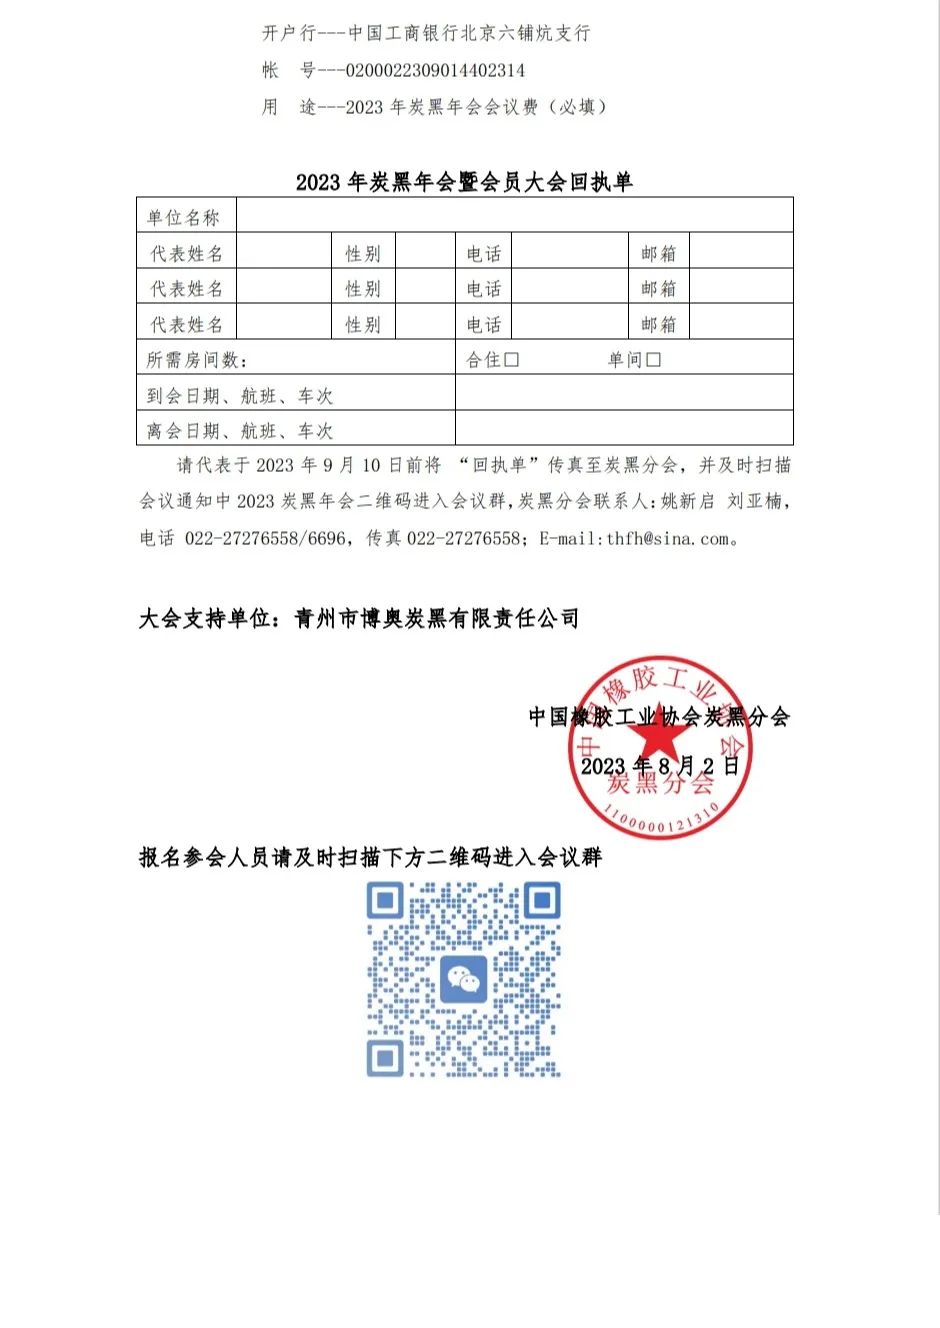 中国橡胶工业协会炭黑分会